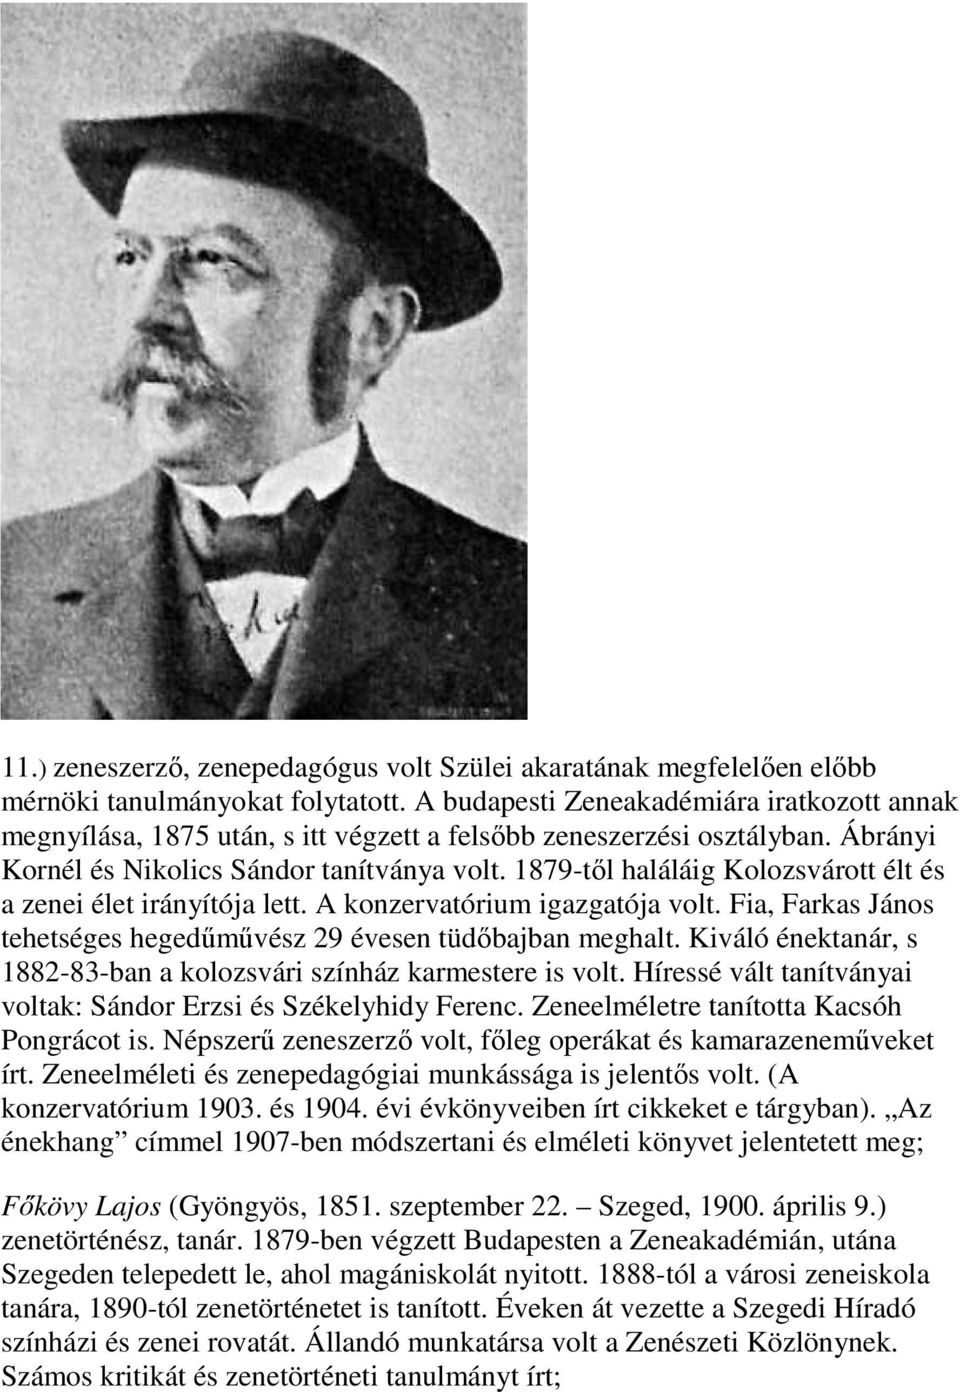 1879-től haláláig Kolozsvárott élt és a zenei élet irányítója lett. A konzervatórium igazgatója volt. Fia, Farkas János tehetséges hegedűművész 29 évesen tüdőbajban meghalt.